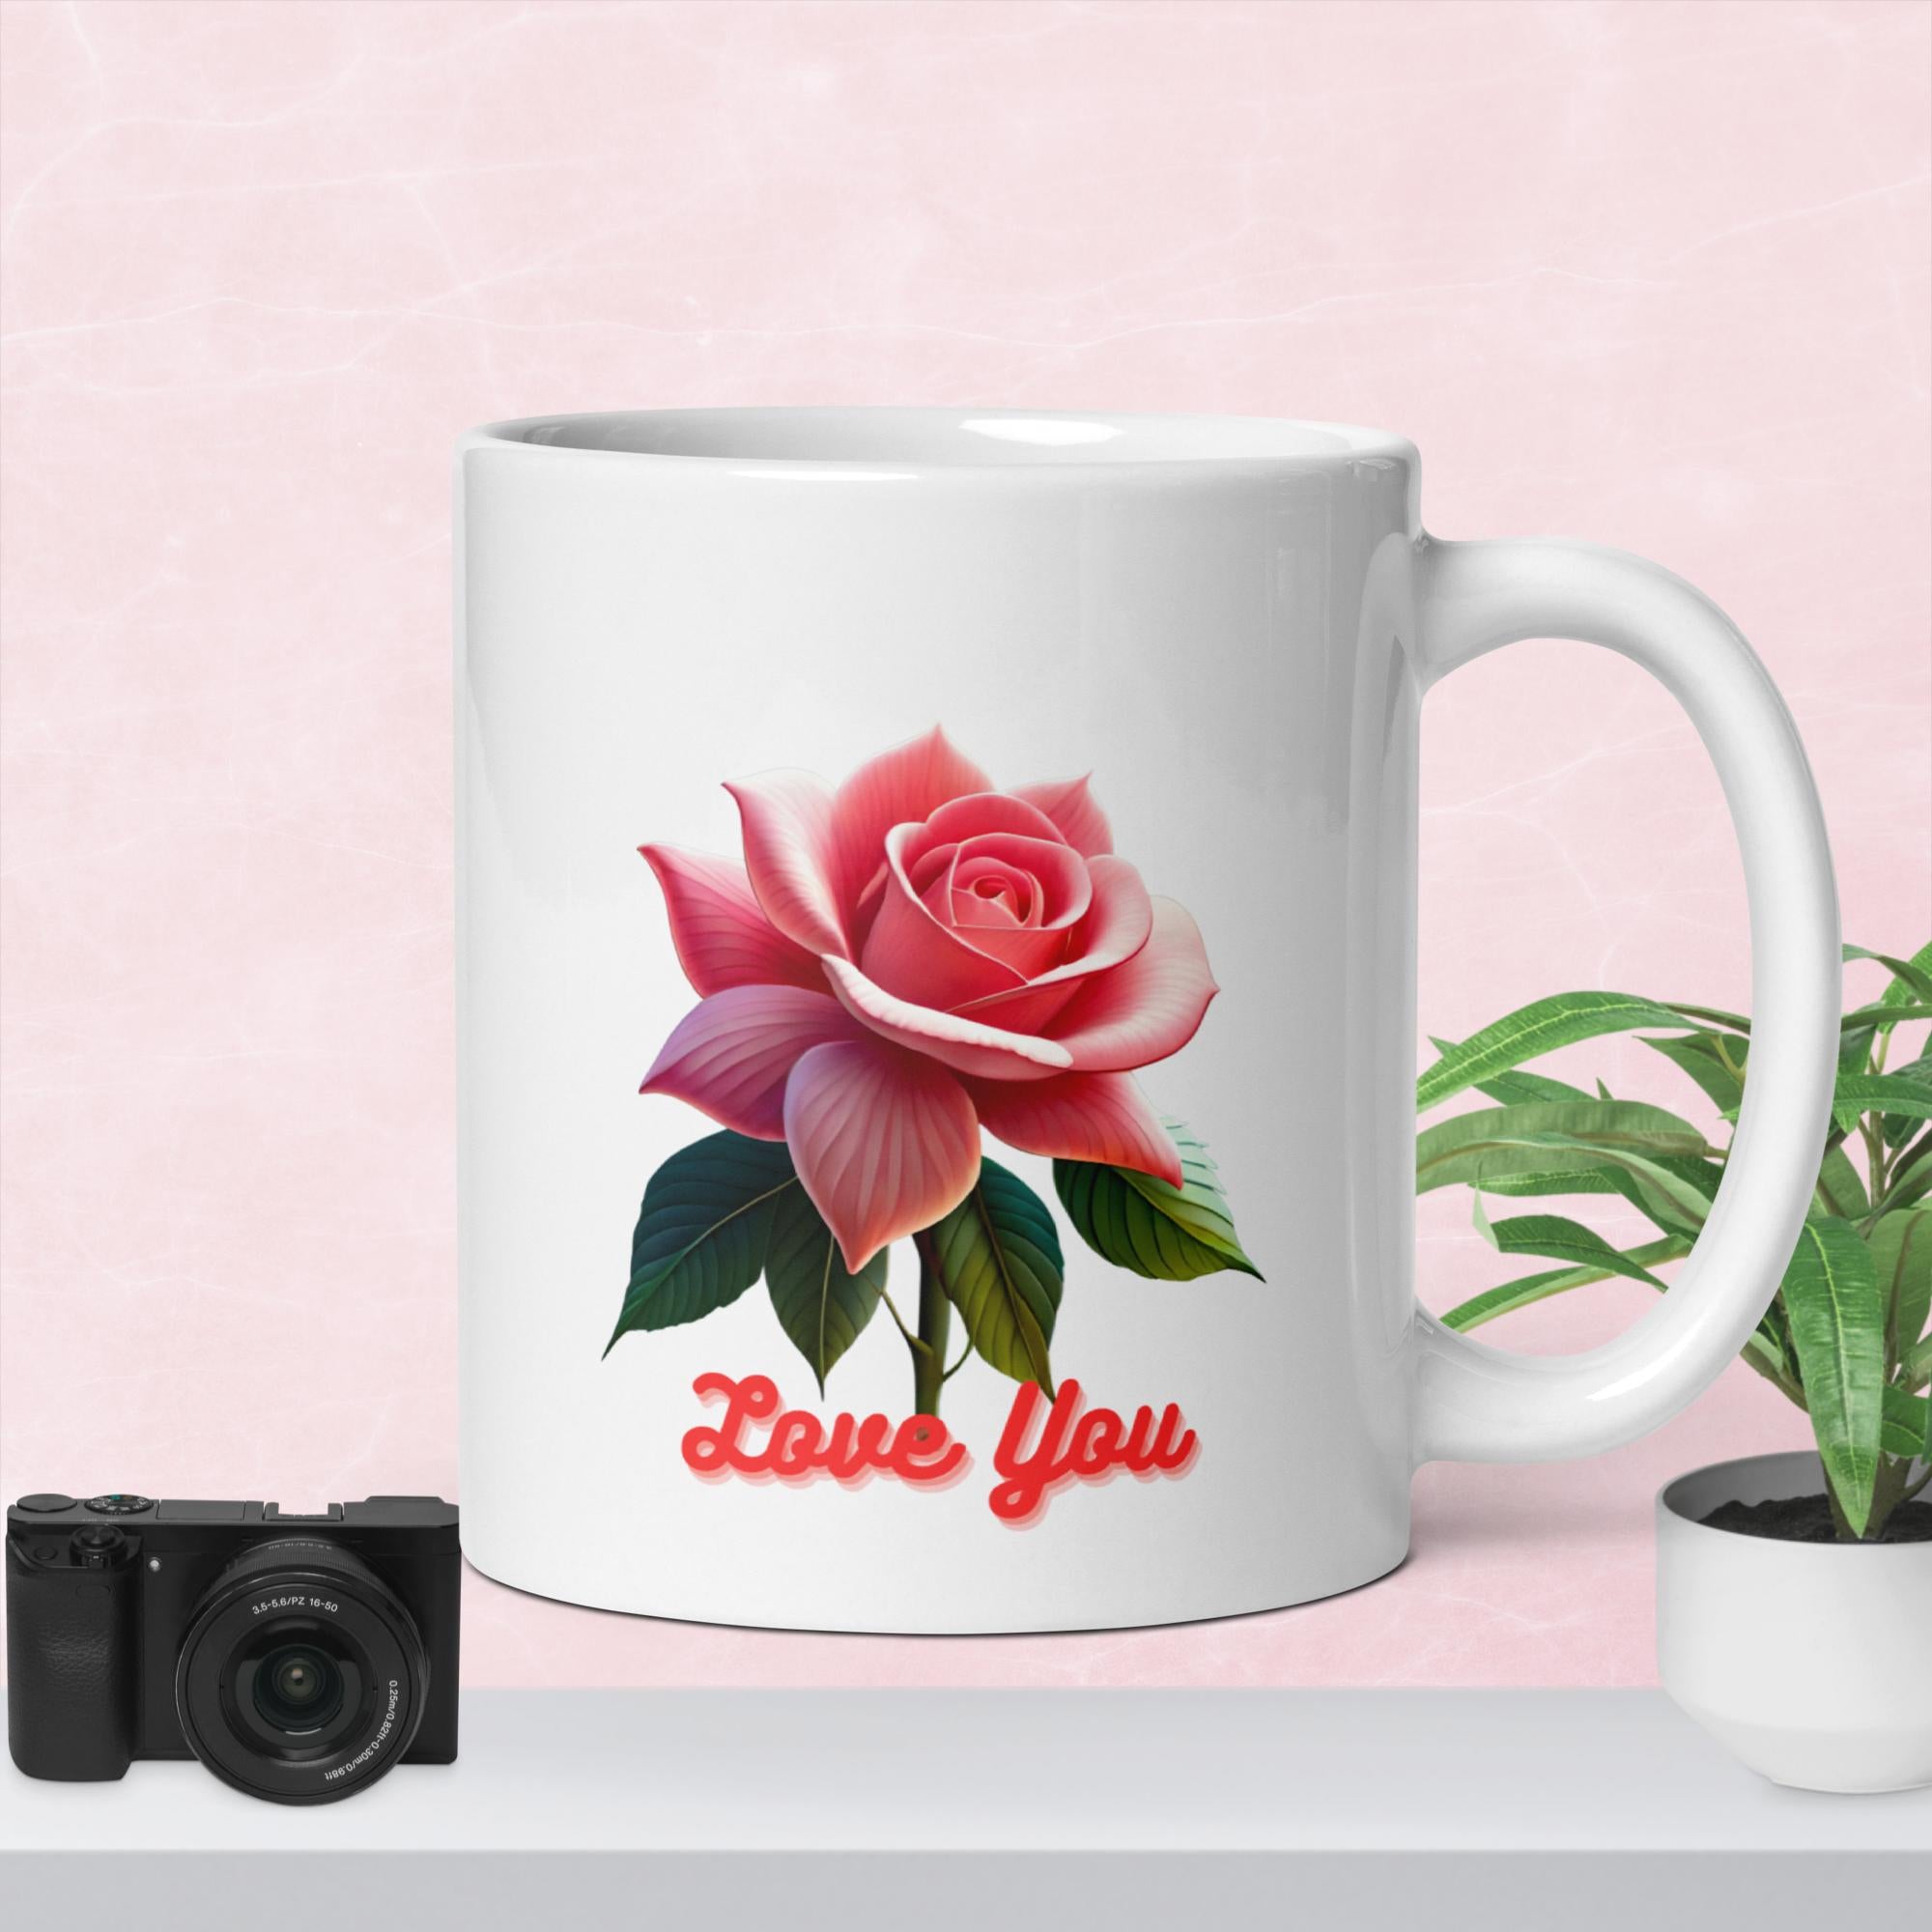 Simple Rose White glossy mug